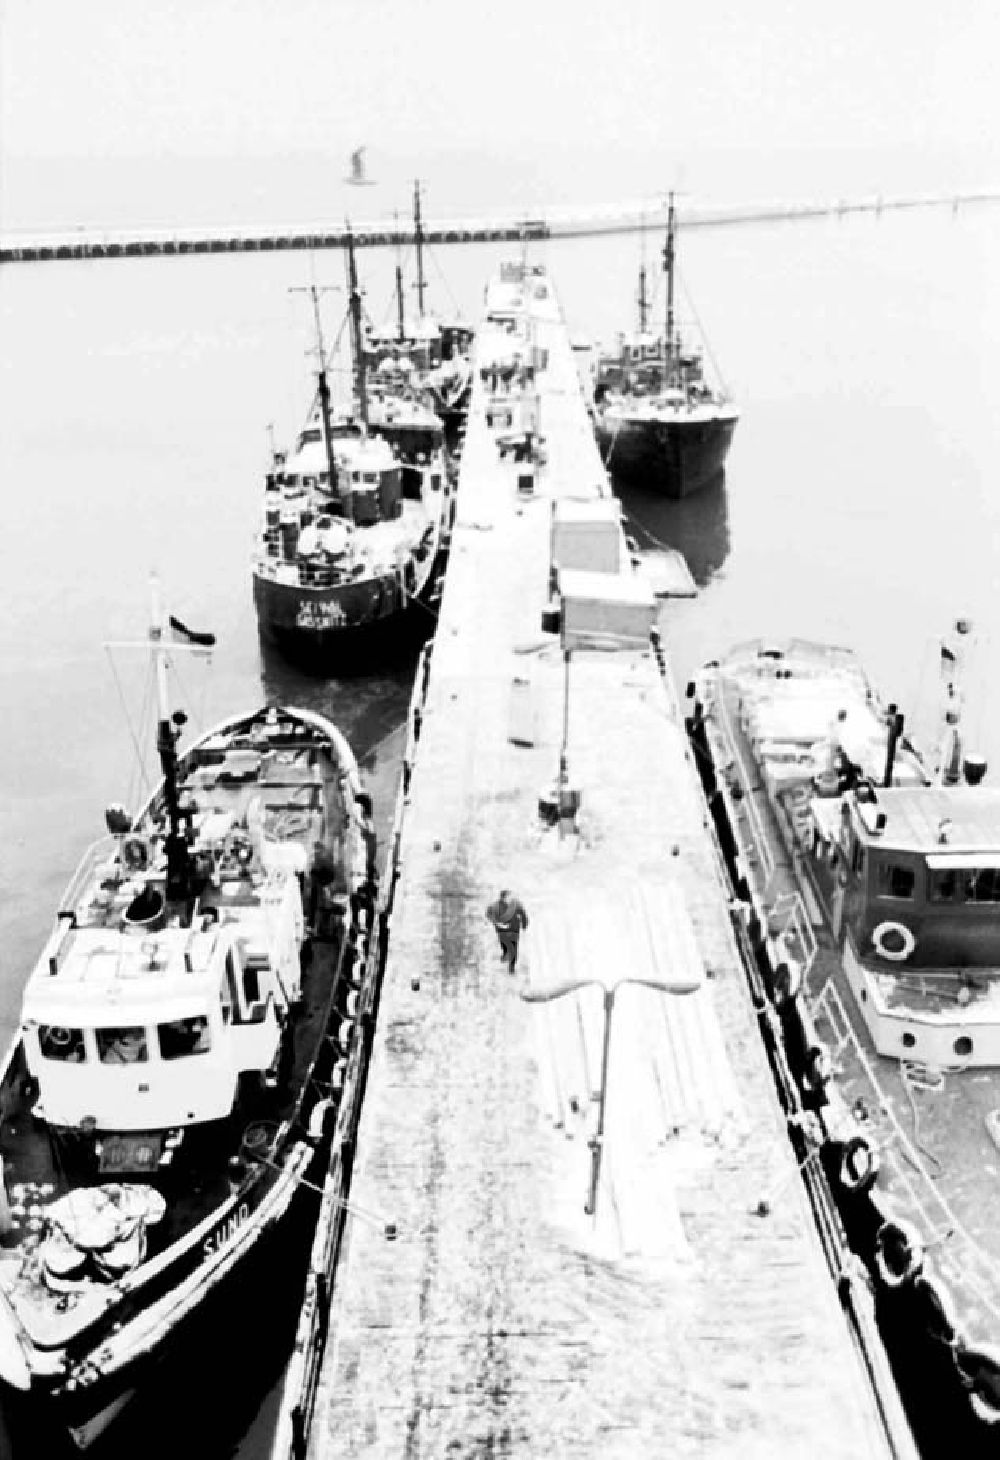 GDR image archive: Saßnitz - Hafen vom Fischkombinat in Saßnitz auf Rügen